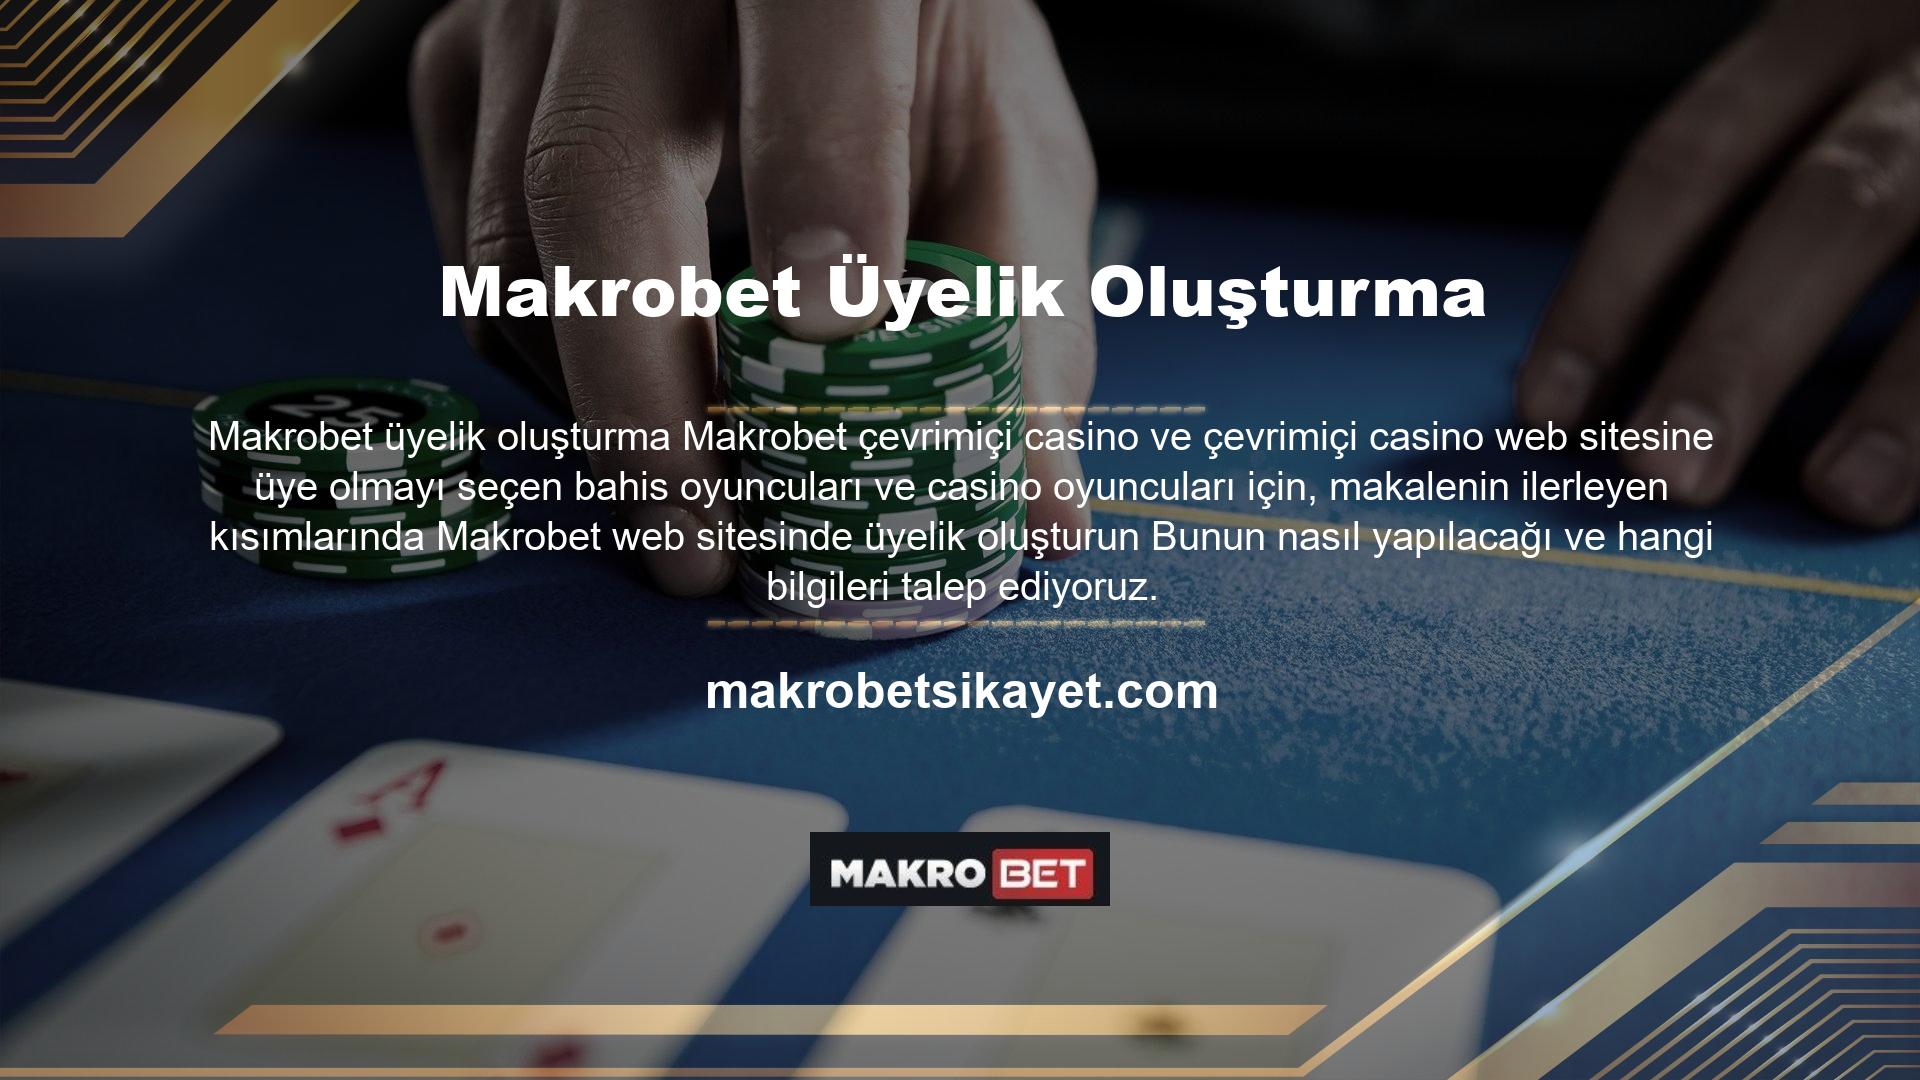 Makrobet çevrimiçi casino ve çevrimiçi casino web sitesine Makrobet